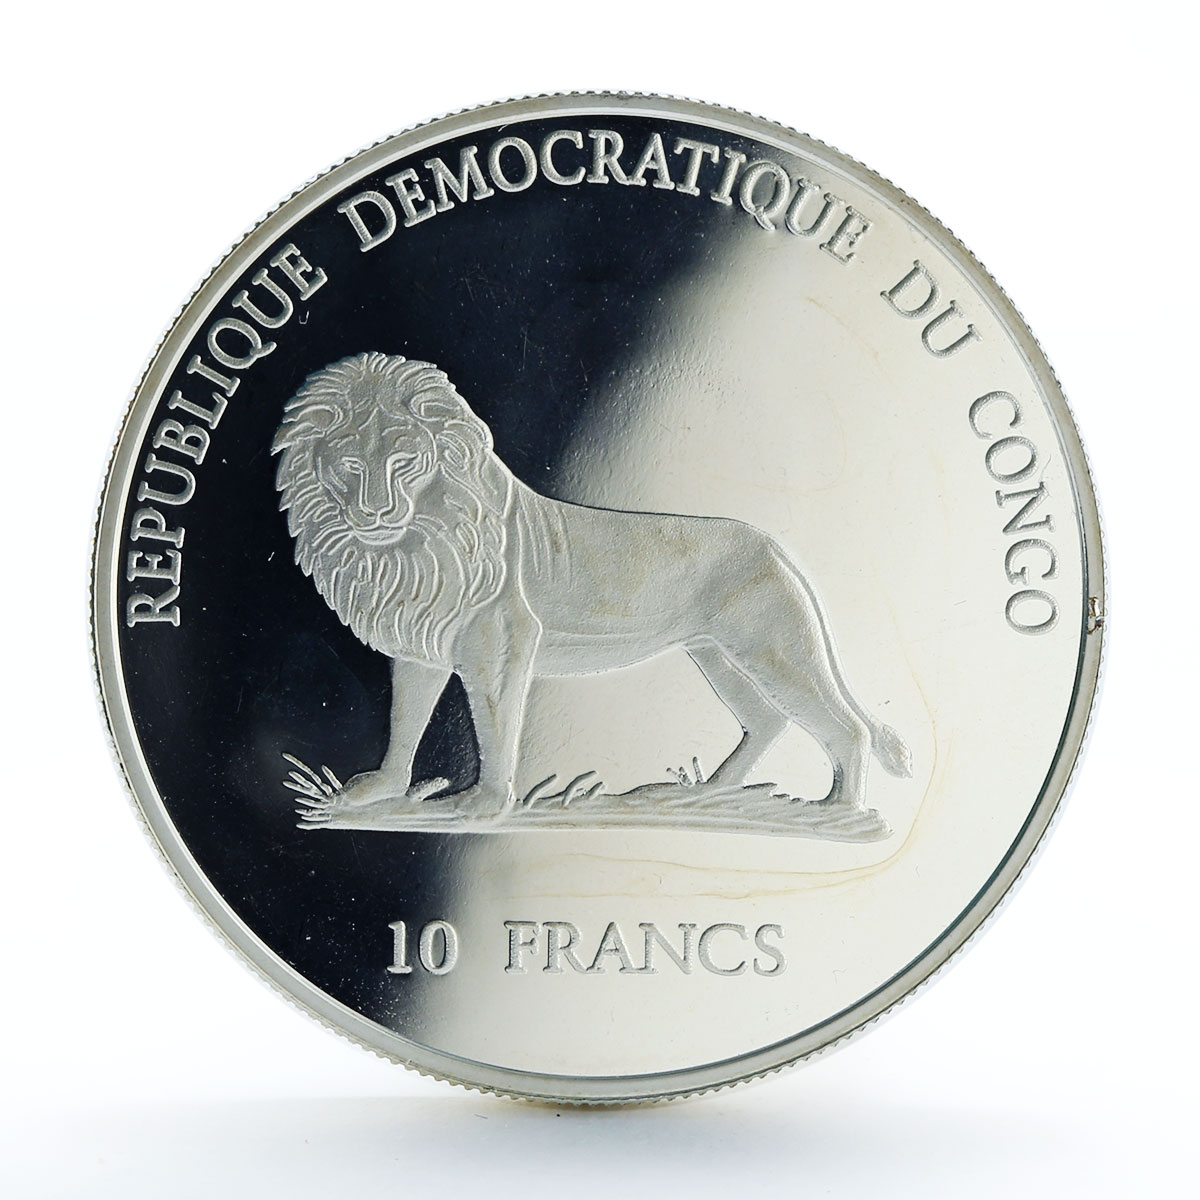 Congo 10 francs Sydney 2000 Pierre De Coubertin silver coin 2000